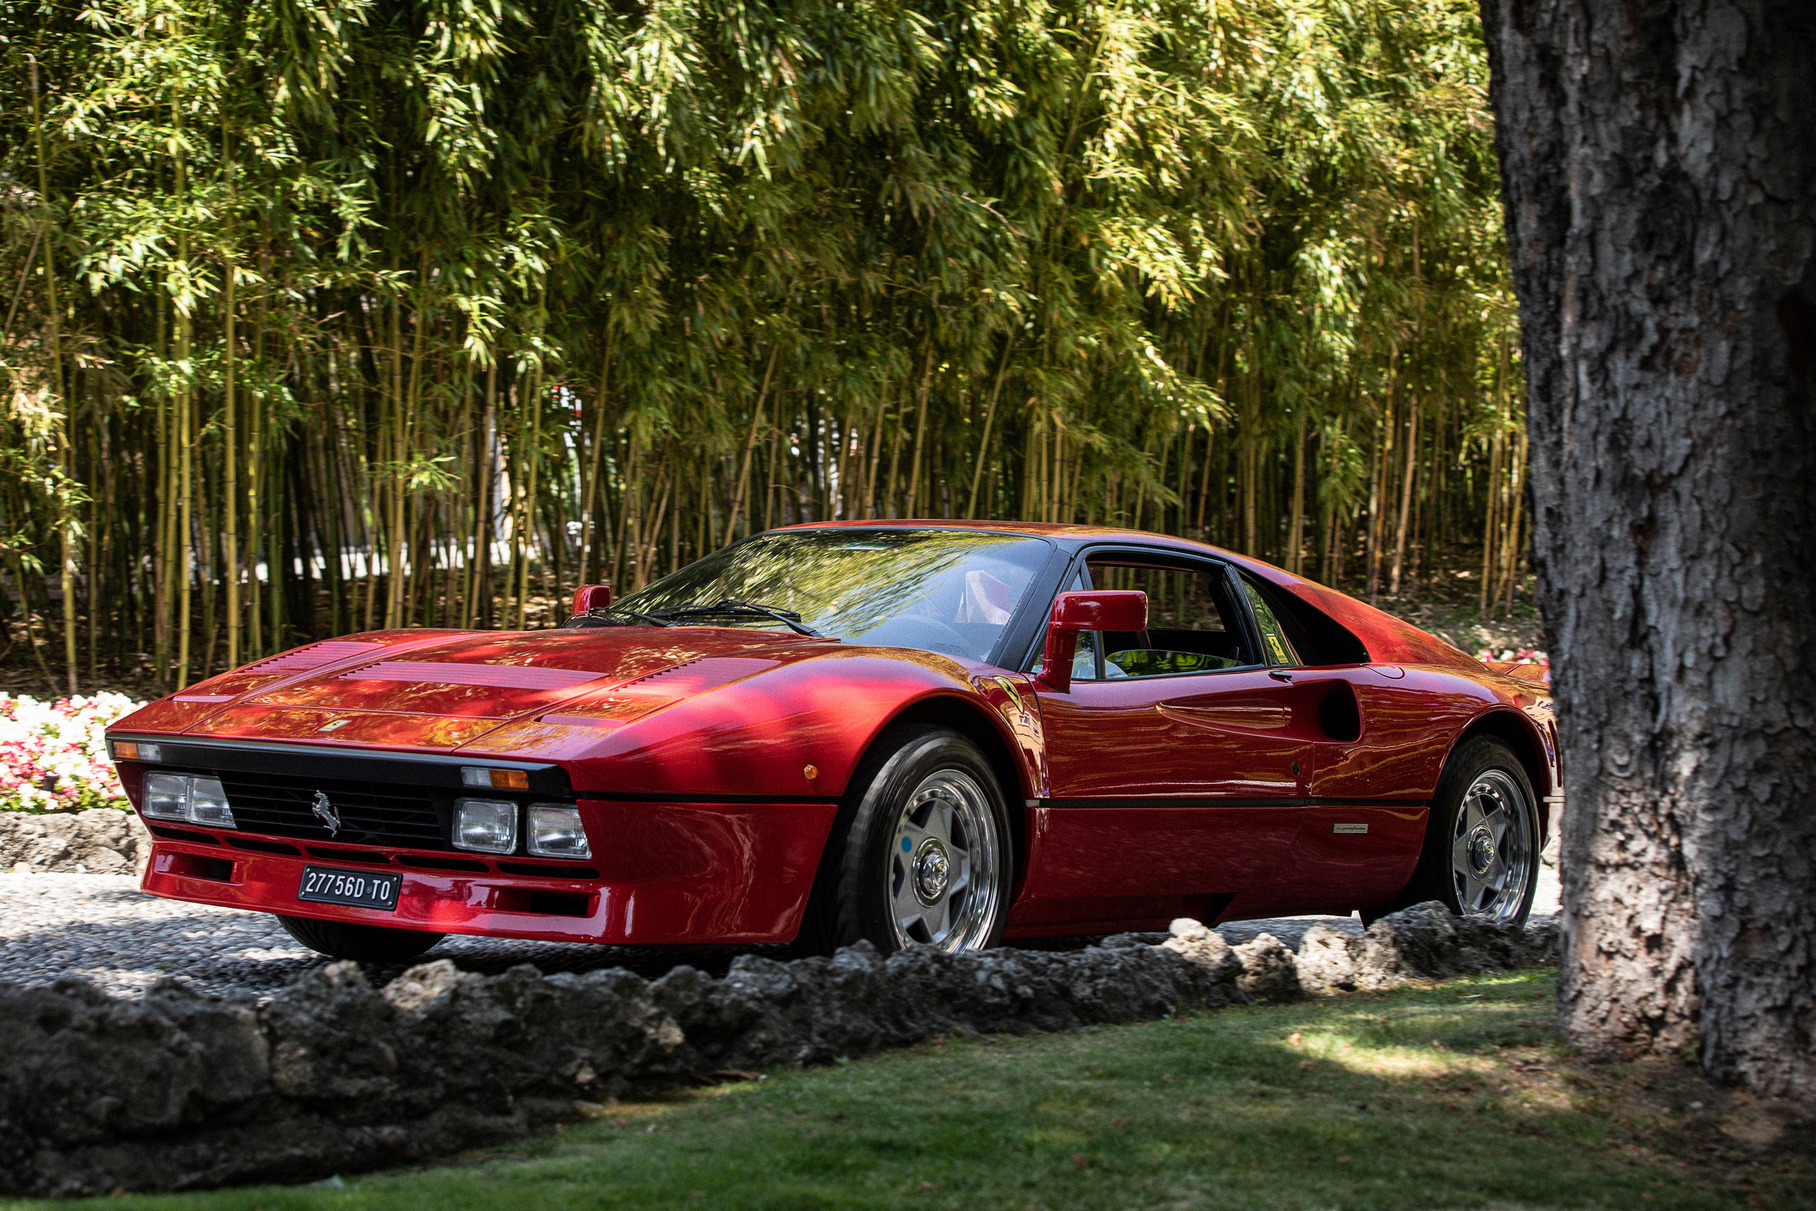 Ferrari 288 GTO со своим турбомотором V8 2.9 мощностью 400 сил не только преследовал, но и легко преодолевал отметку 300 километров в час